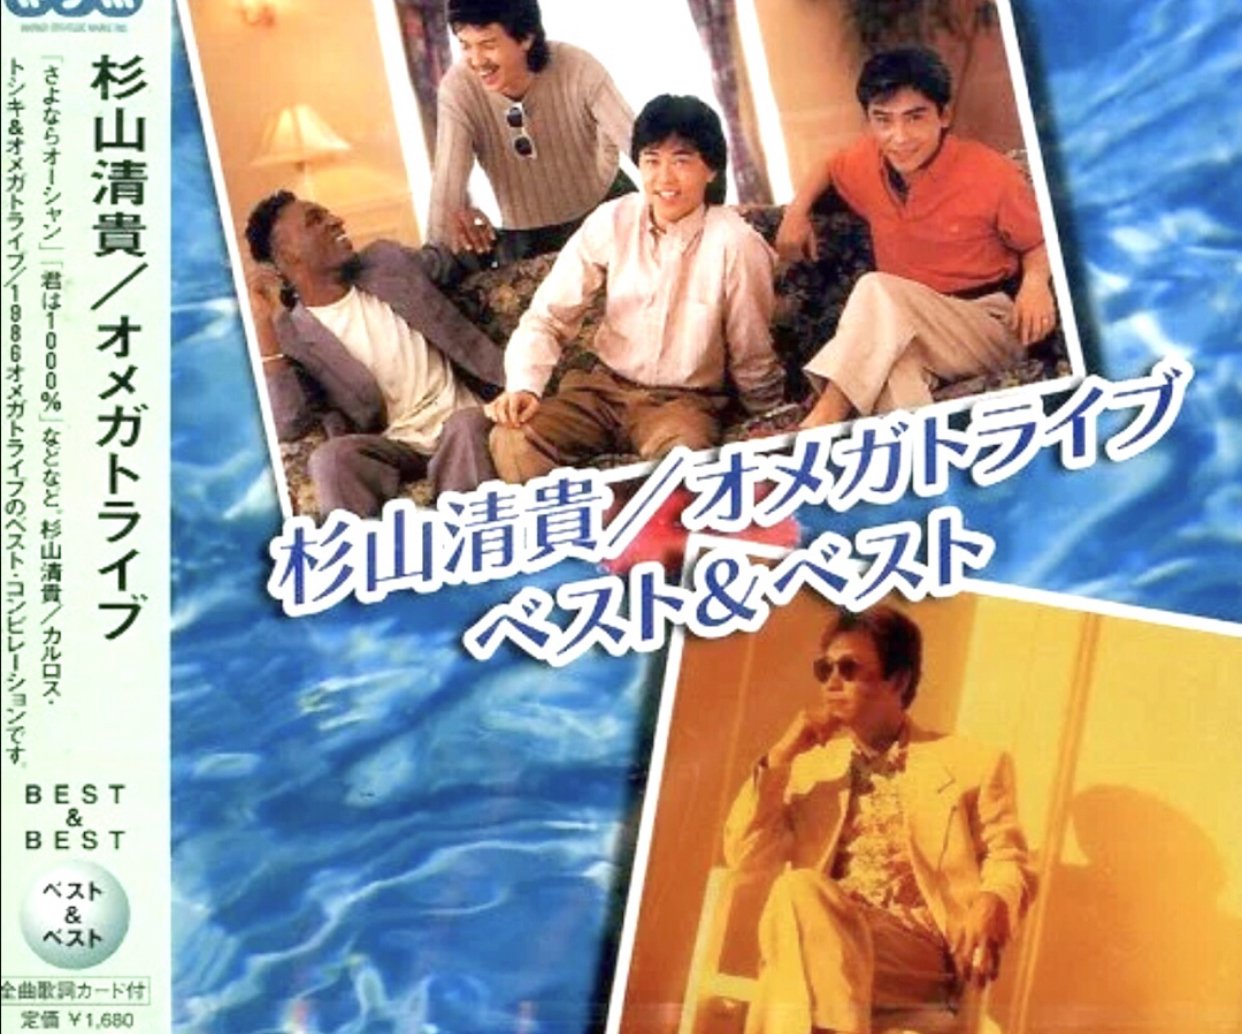 トシキ & トライブ カルロス オメガ 1986オメガトライブ｜35周年記念アルバム『1986 OMEGA